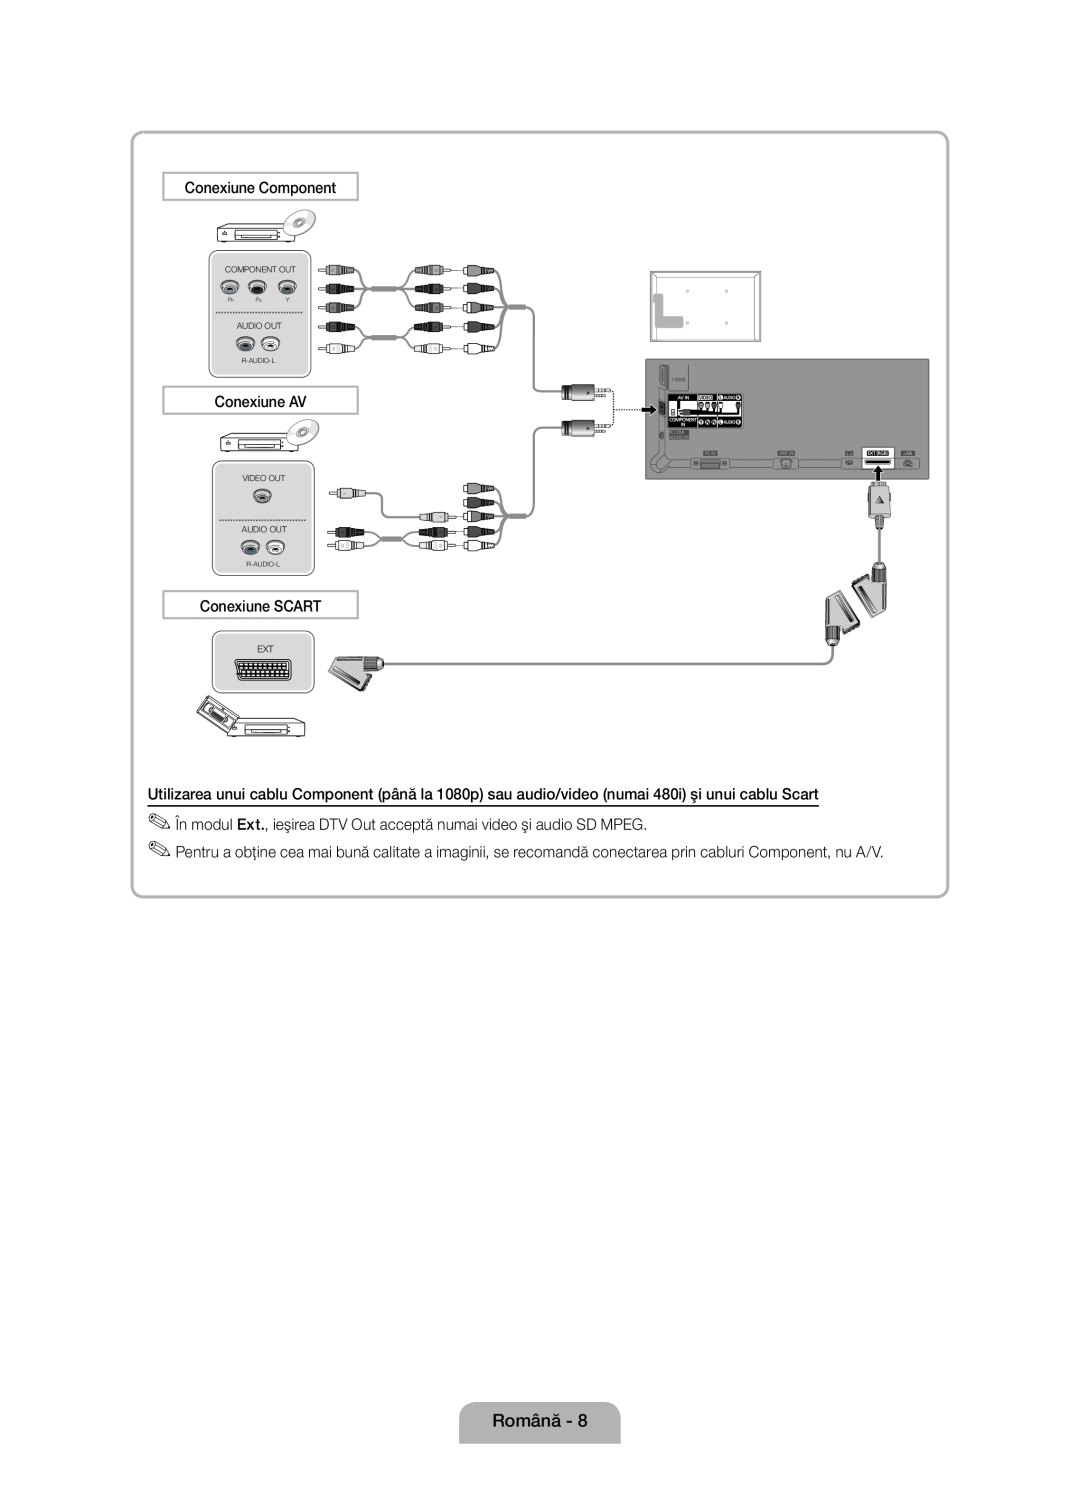 Samsung UE46D5000PWXBT manual Română, Conexiune Component, Conexiune AV, Conexiune SCART, Component Out, Audio Out 